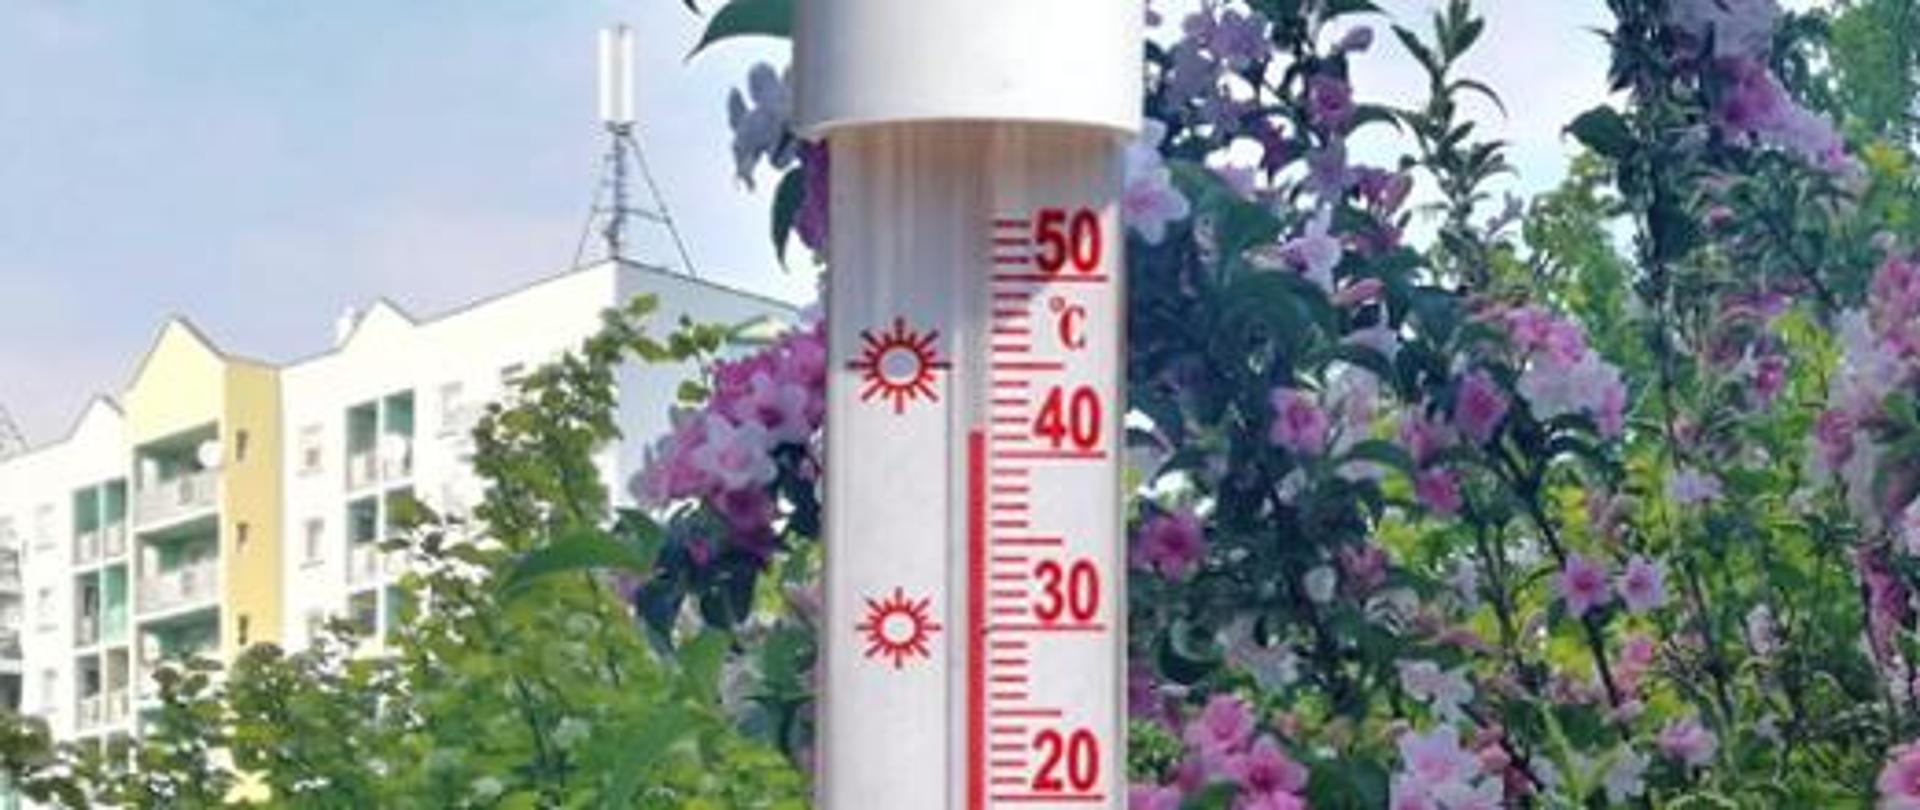 Zdjęcie przedstawia termometr zewnętrzny z temperaturą ponad 40 st.C